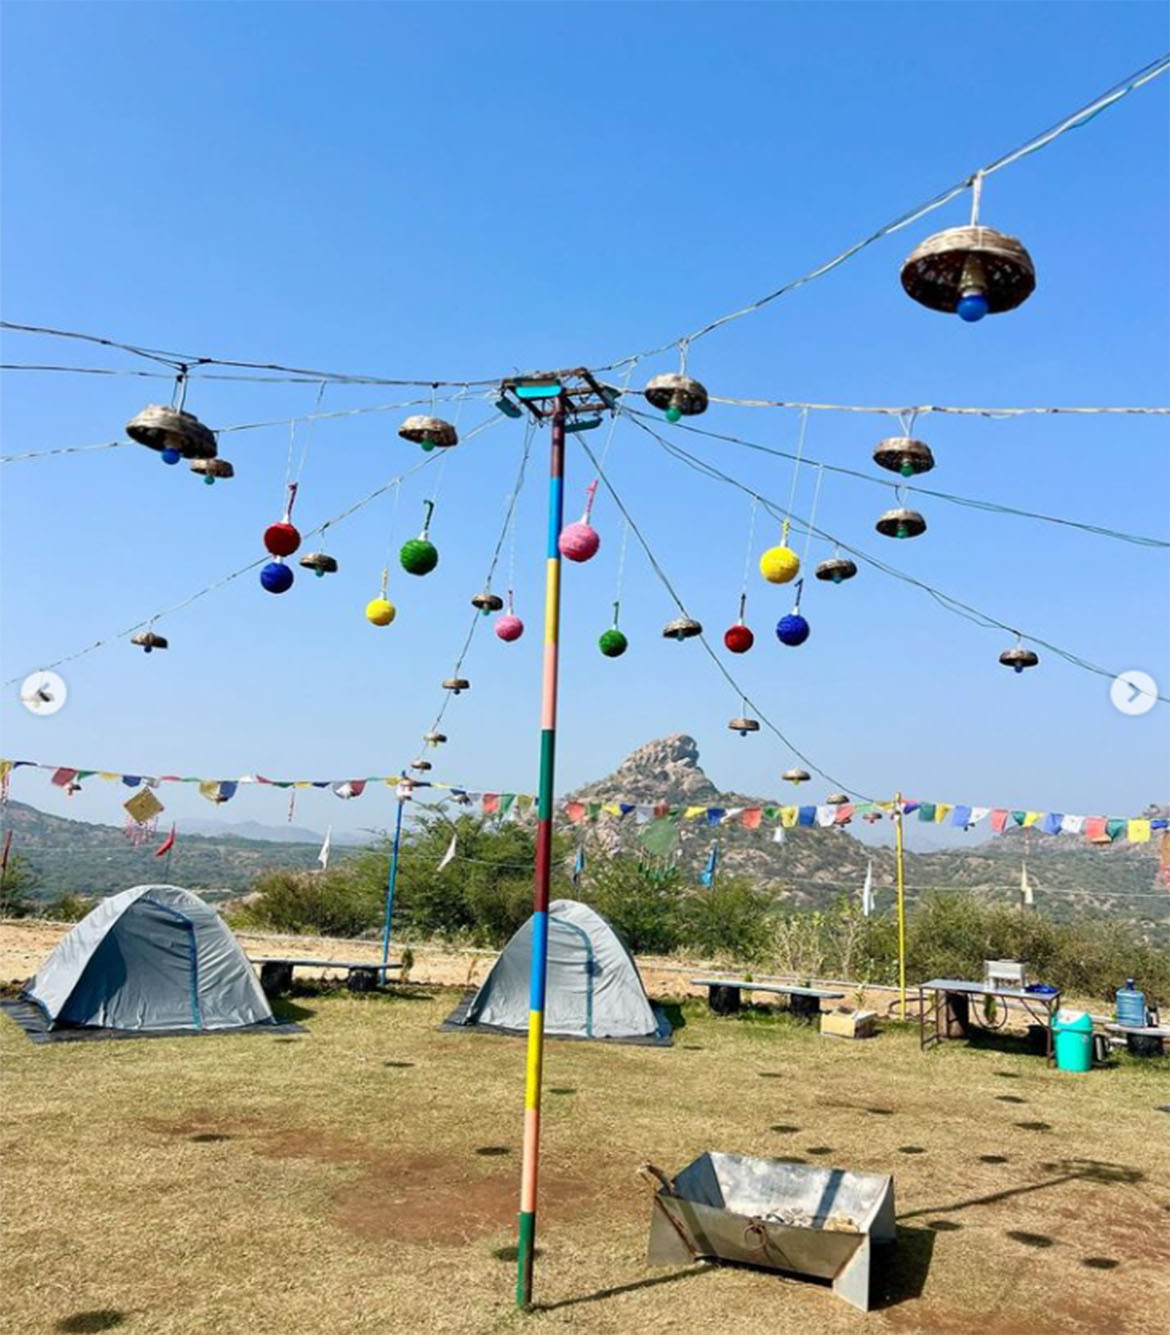 Saffron Hill Camping in Dharoi